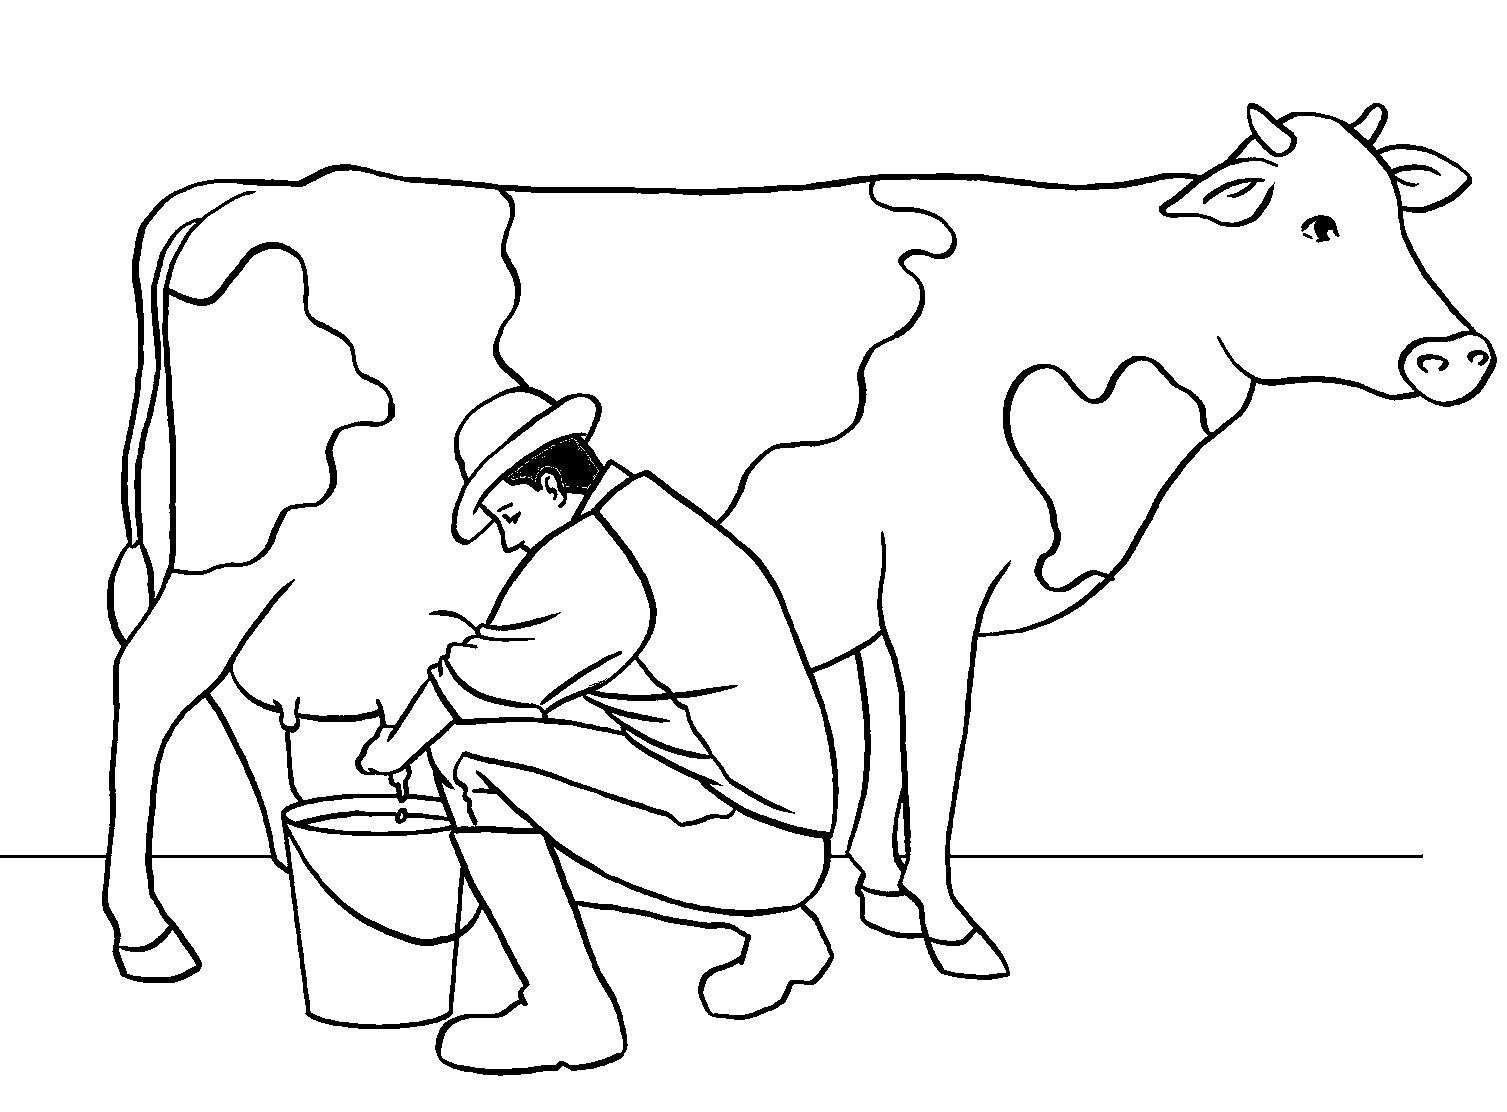 Disegno da colorare di uomo che munge una mucca